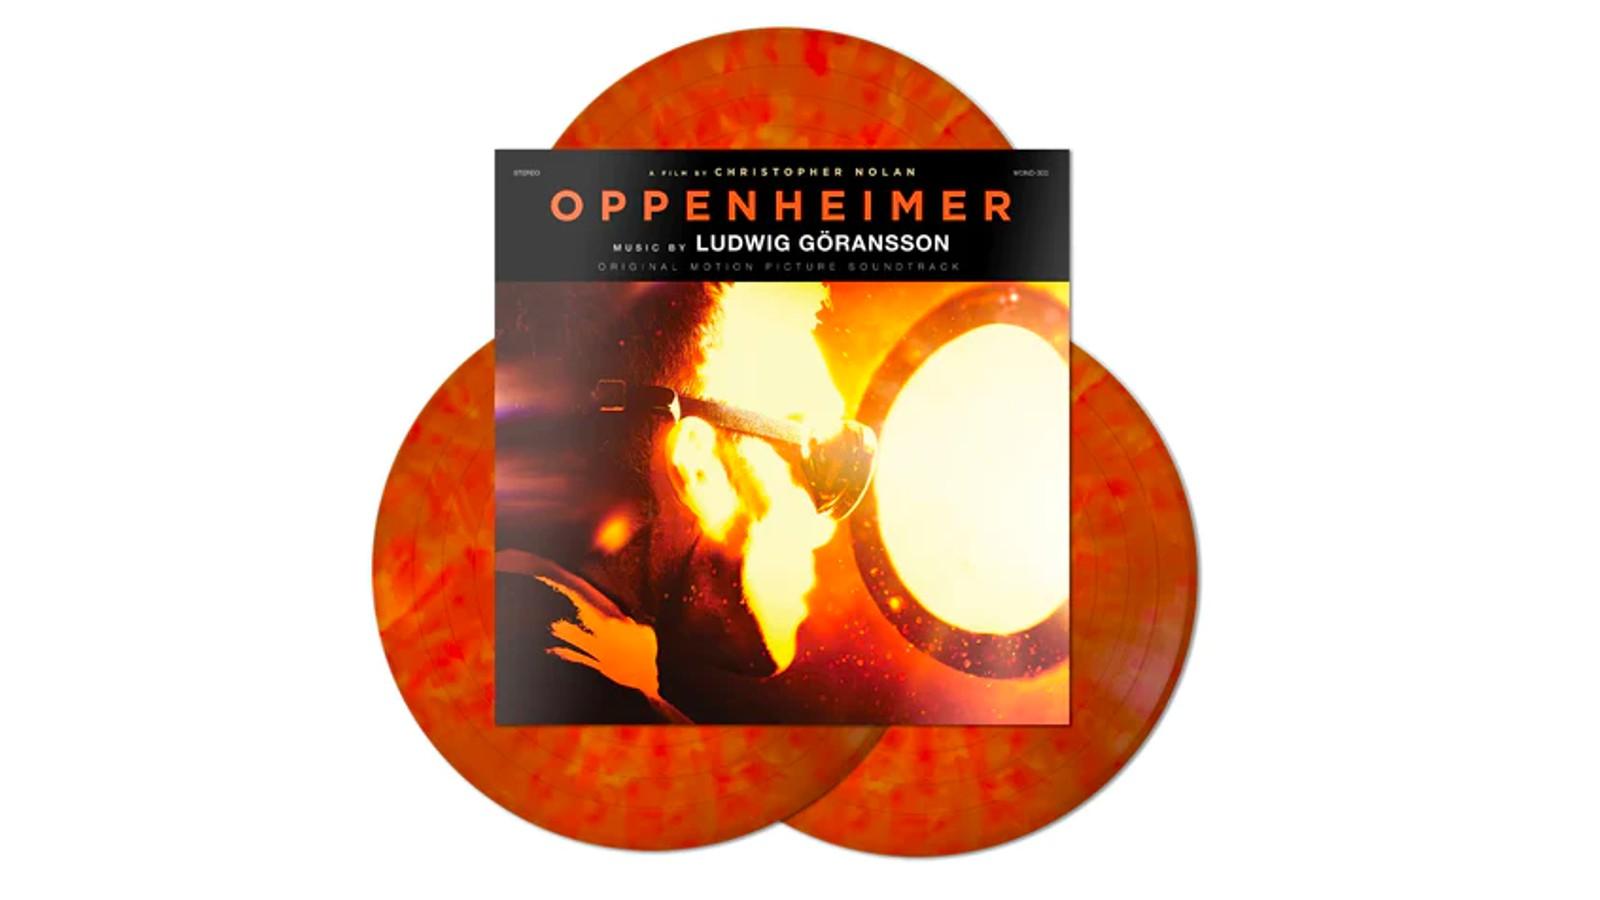 Oppenheimer Store: Official Merch & Vinyl